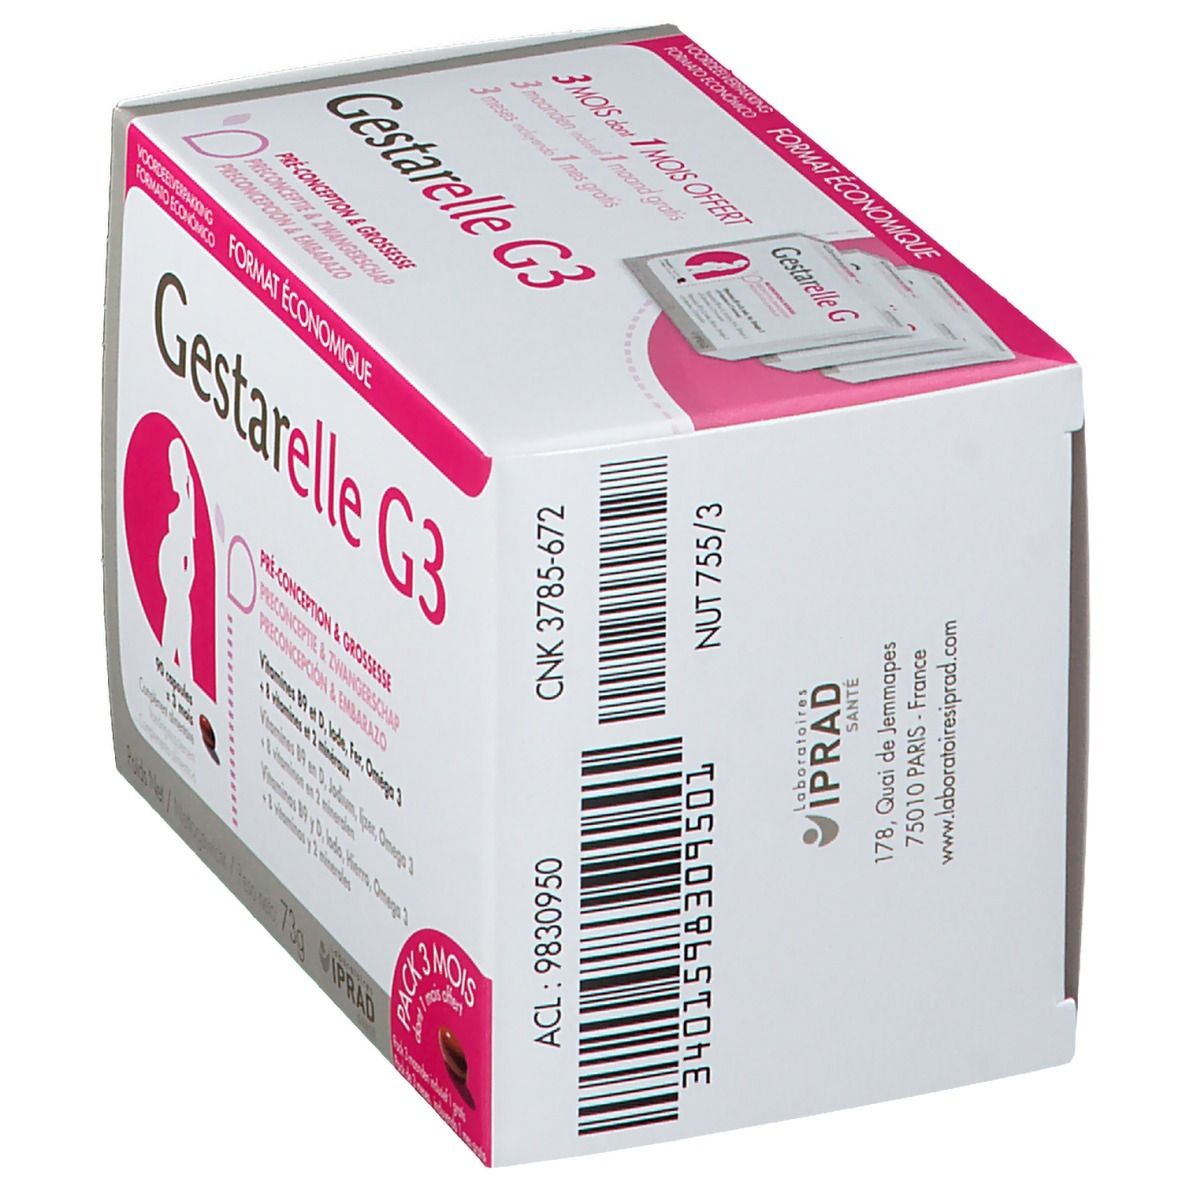 Gestarelle® G3 Grossesse 90 pc(s) - Redcare Pharmacie